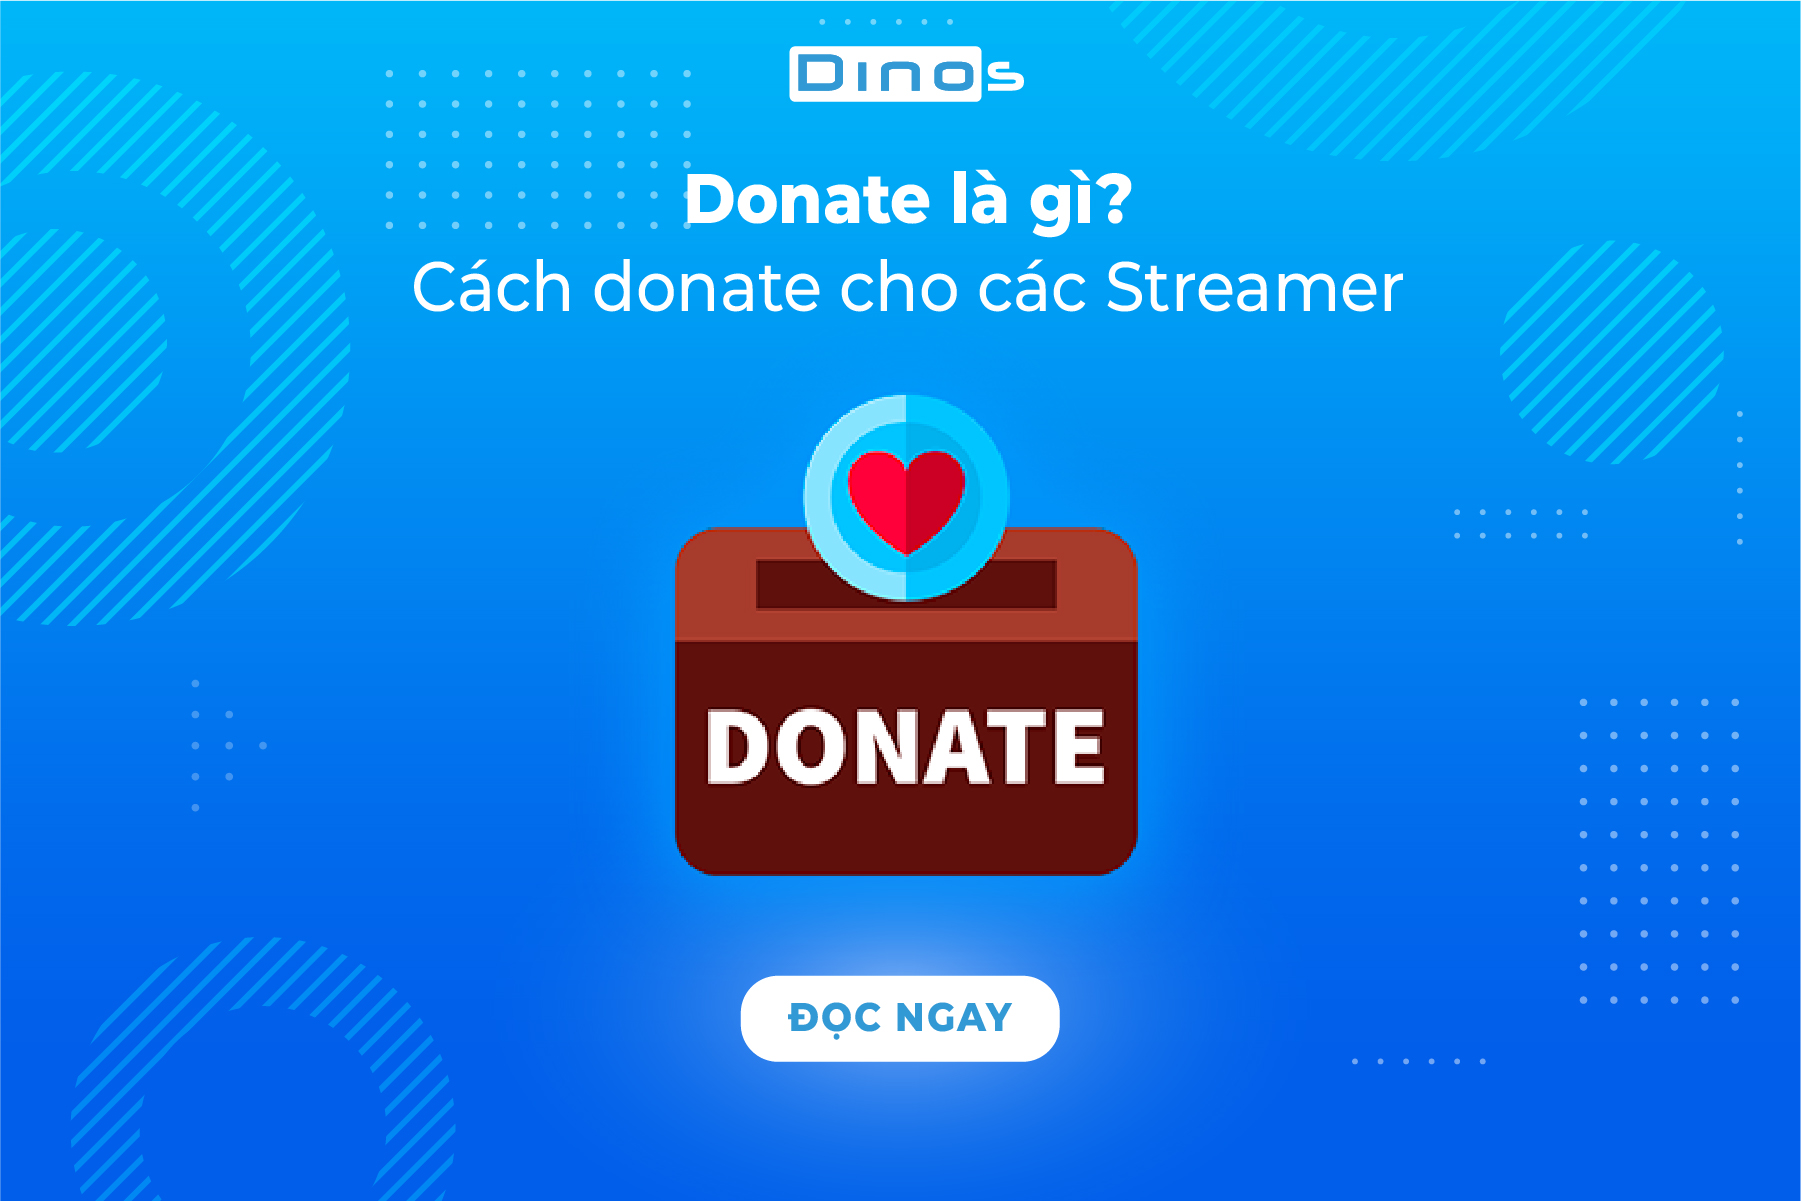 Donate là gì? Cách Donate dành cho Streamer